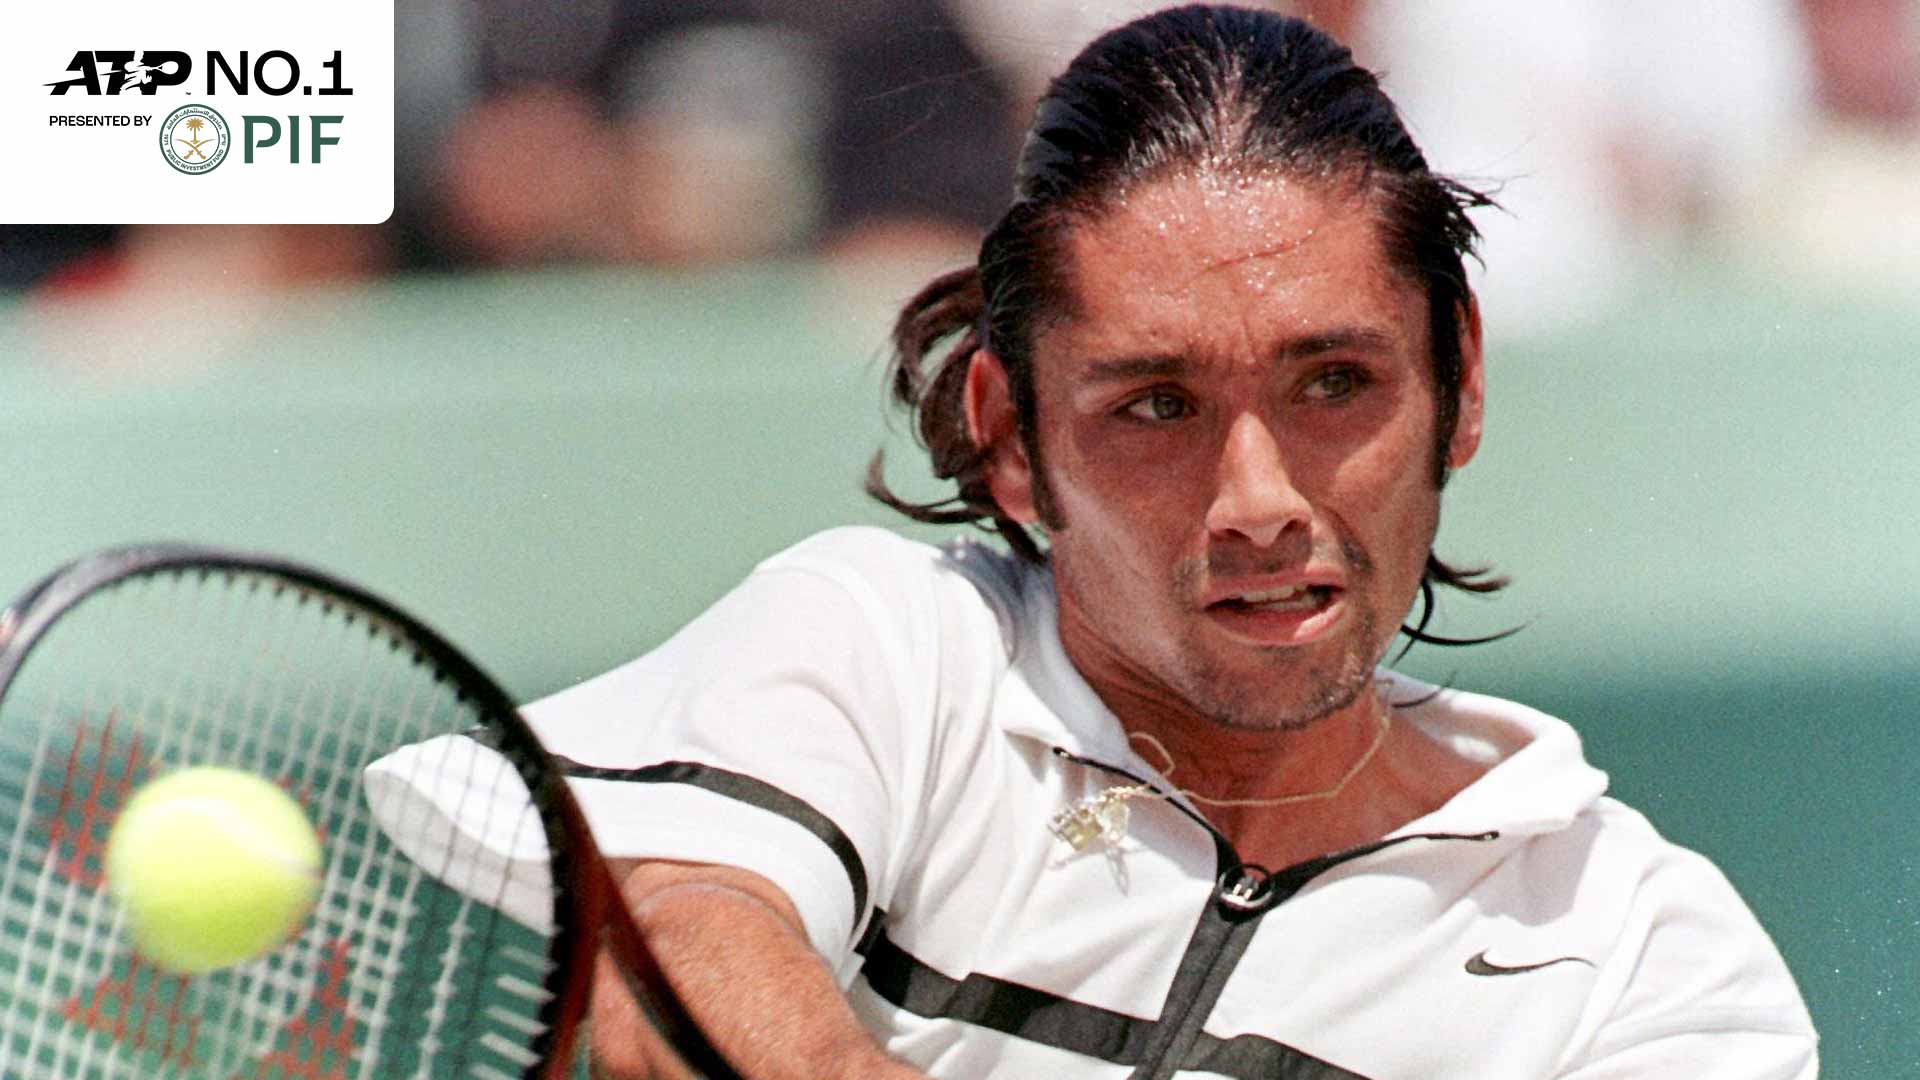 Marcelo Ríos ganó el evento ATP Masters 1000 en Miami en 1998 para ascender al No. 1 del mundo en el PIF ATP Rankings.